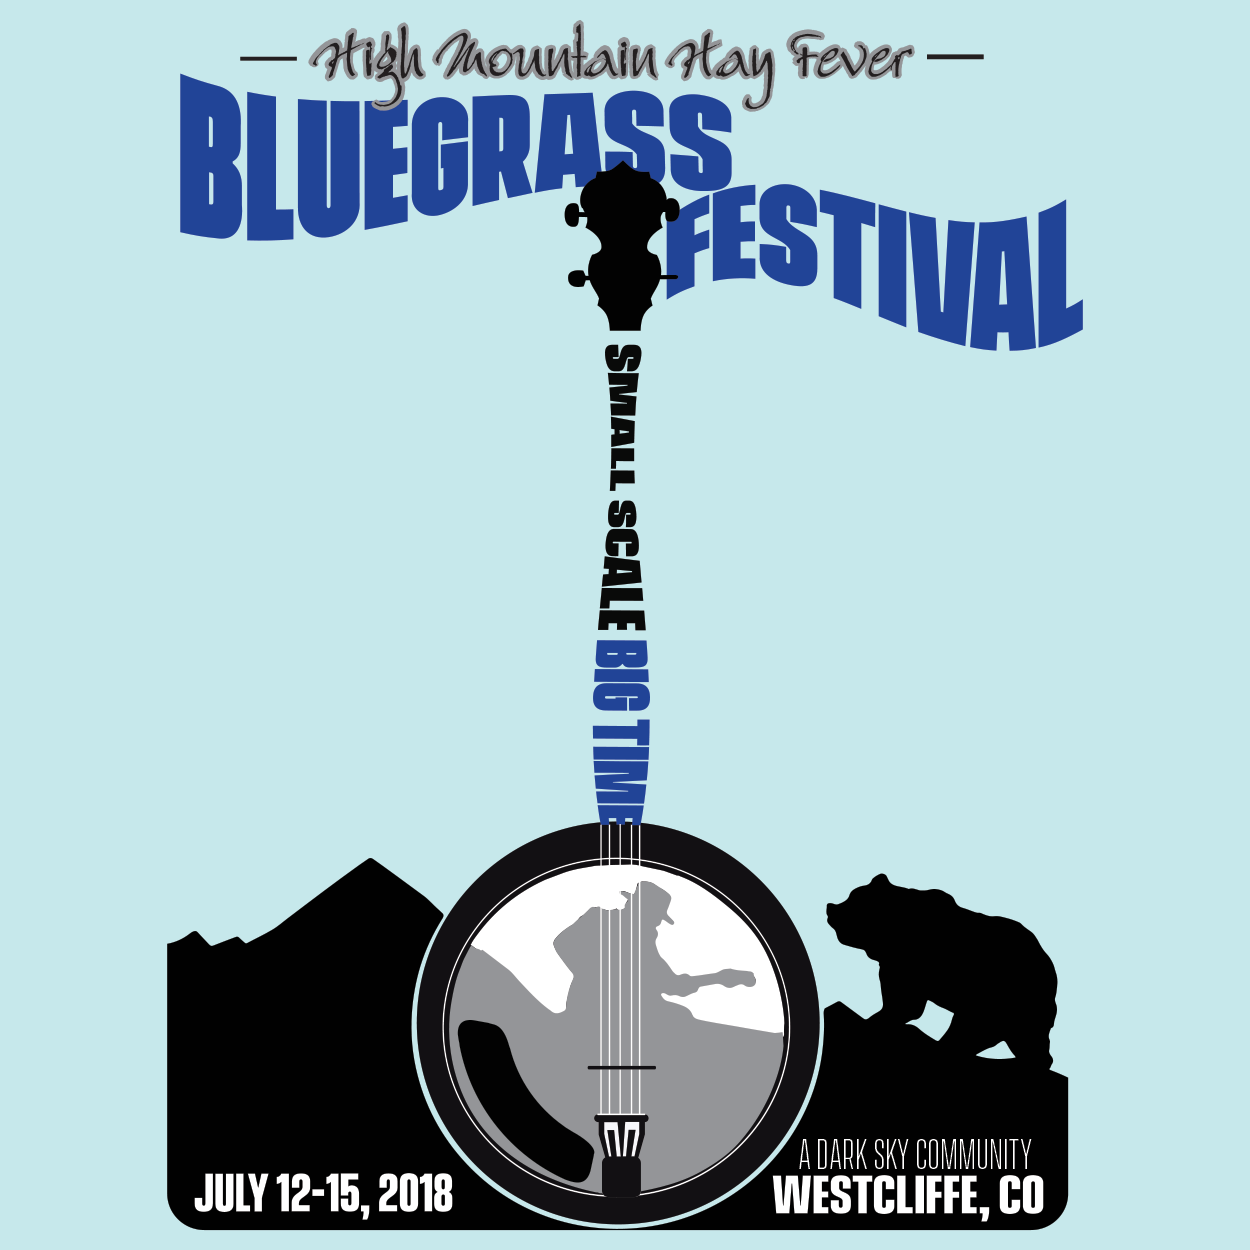 Bluegrass festival